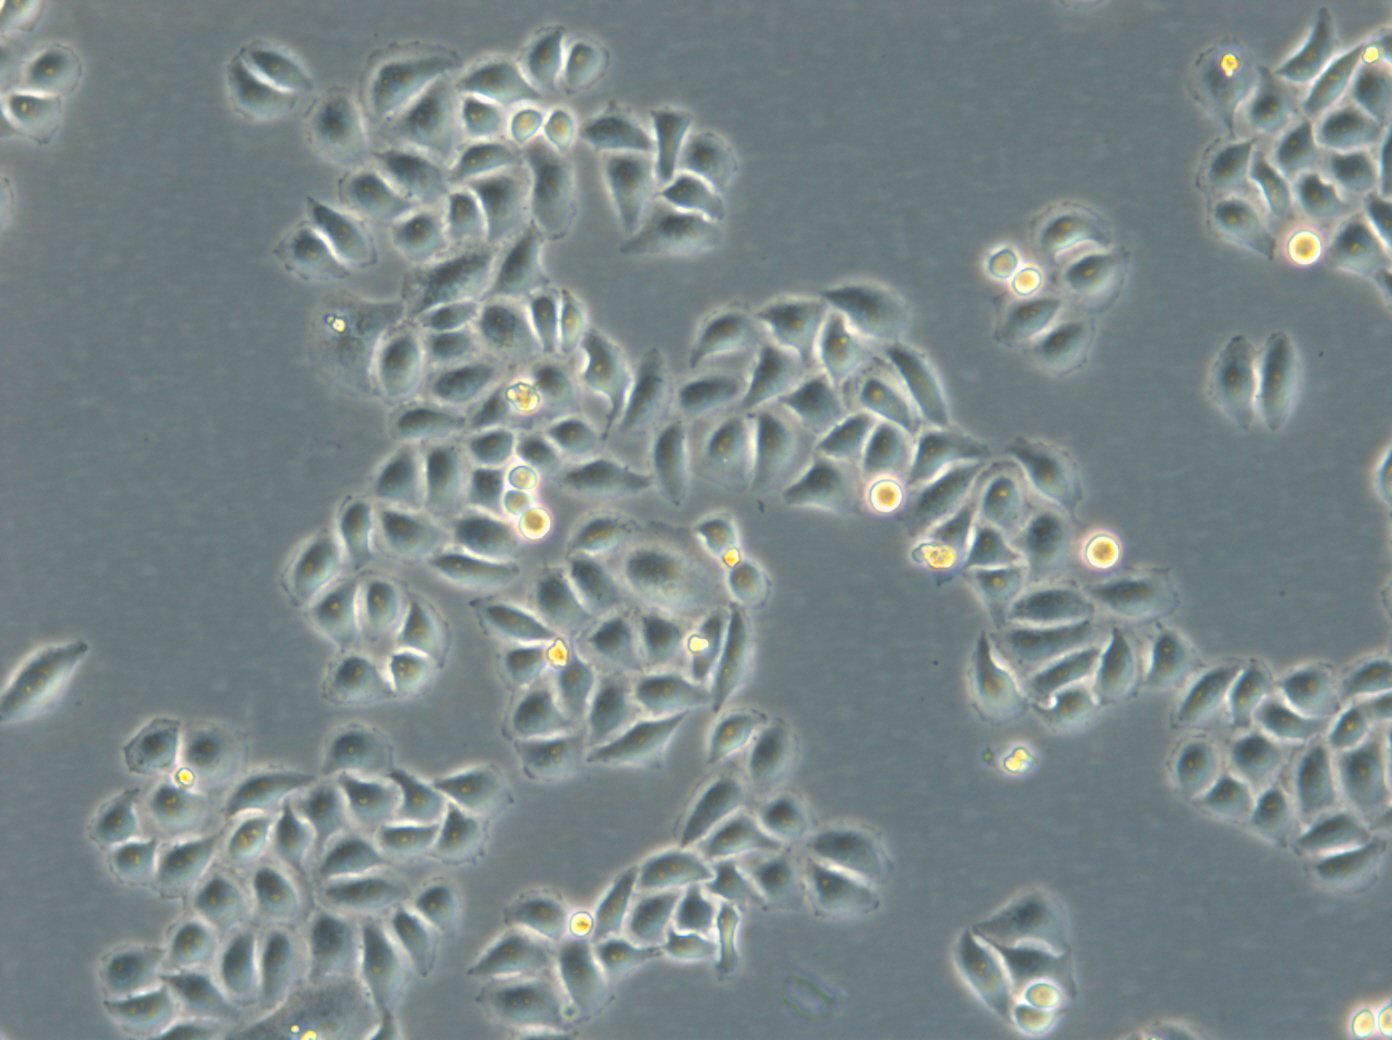 HK-ZFN-AURKB-mEGFP Cells